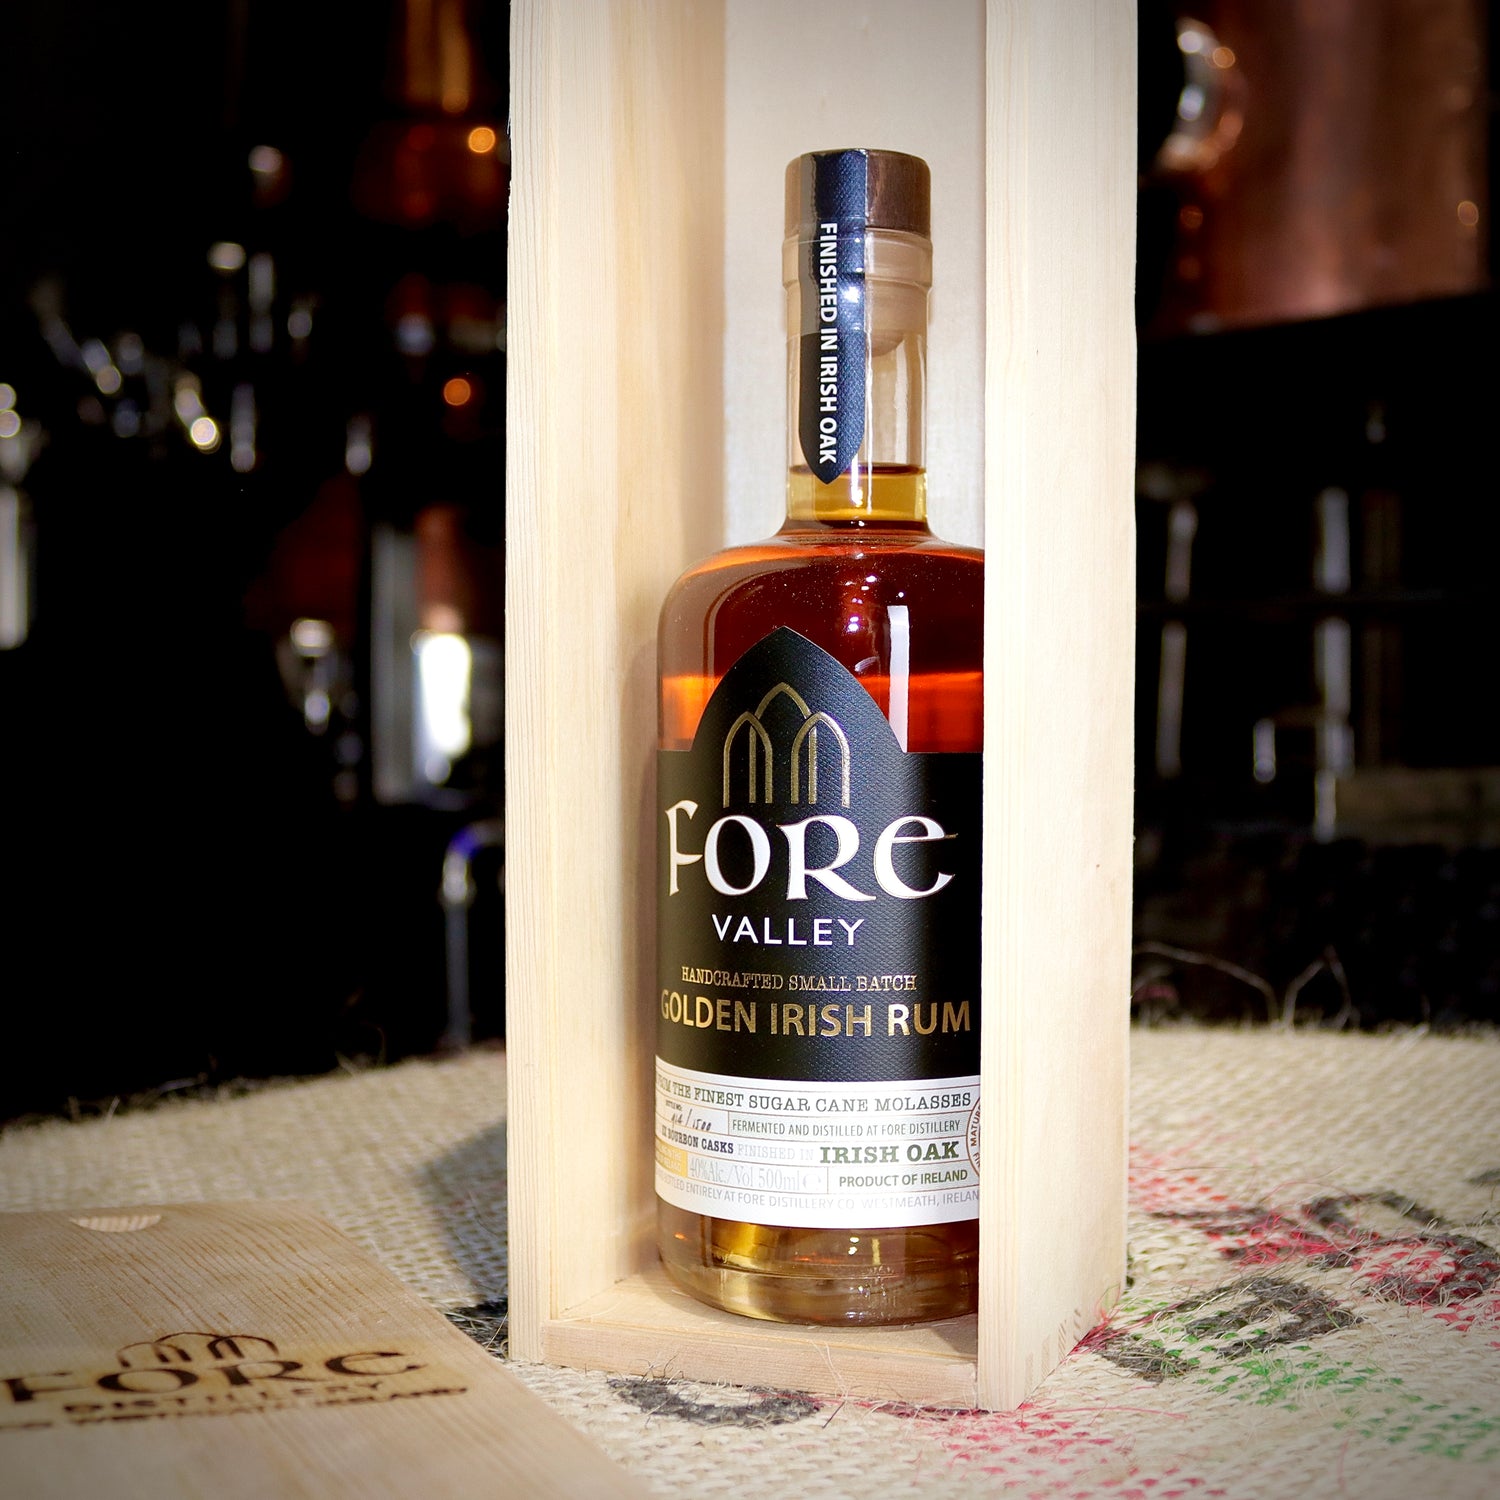 Fore Valley Alcohol Slide Case Gift Golden Irish Rum 500ml Bottle